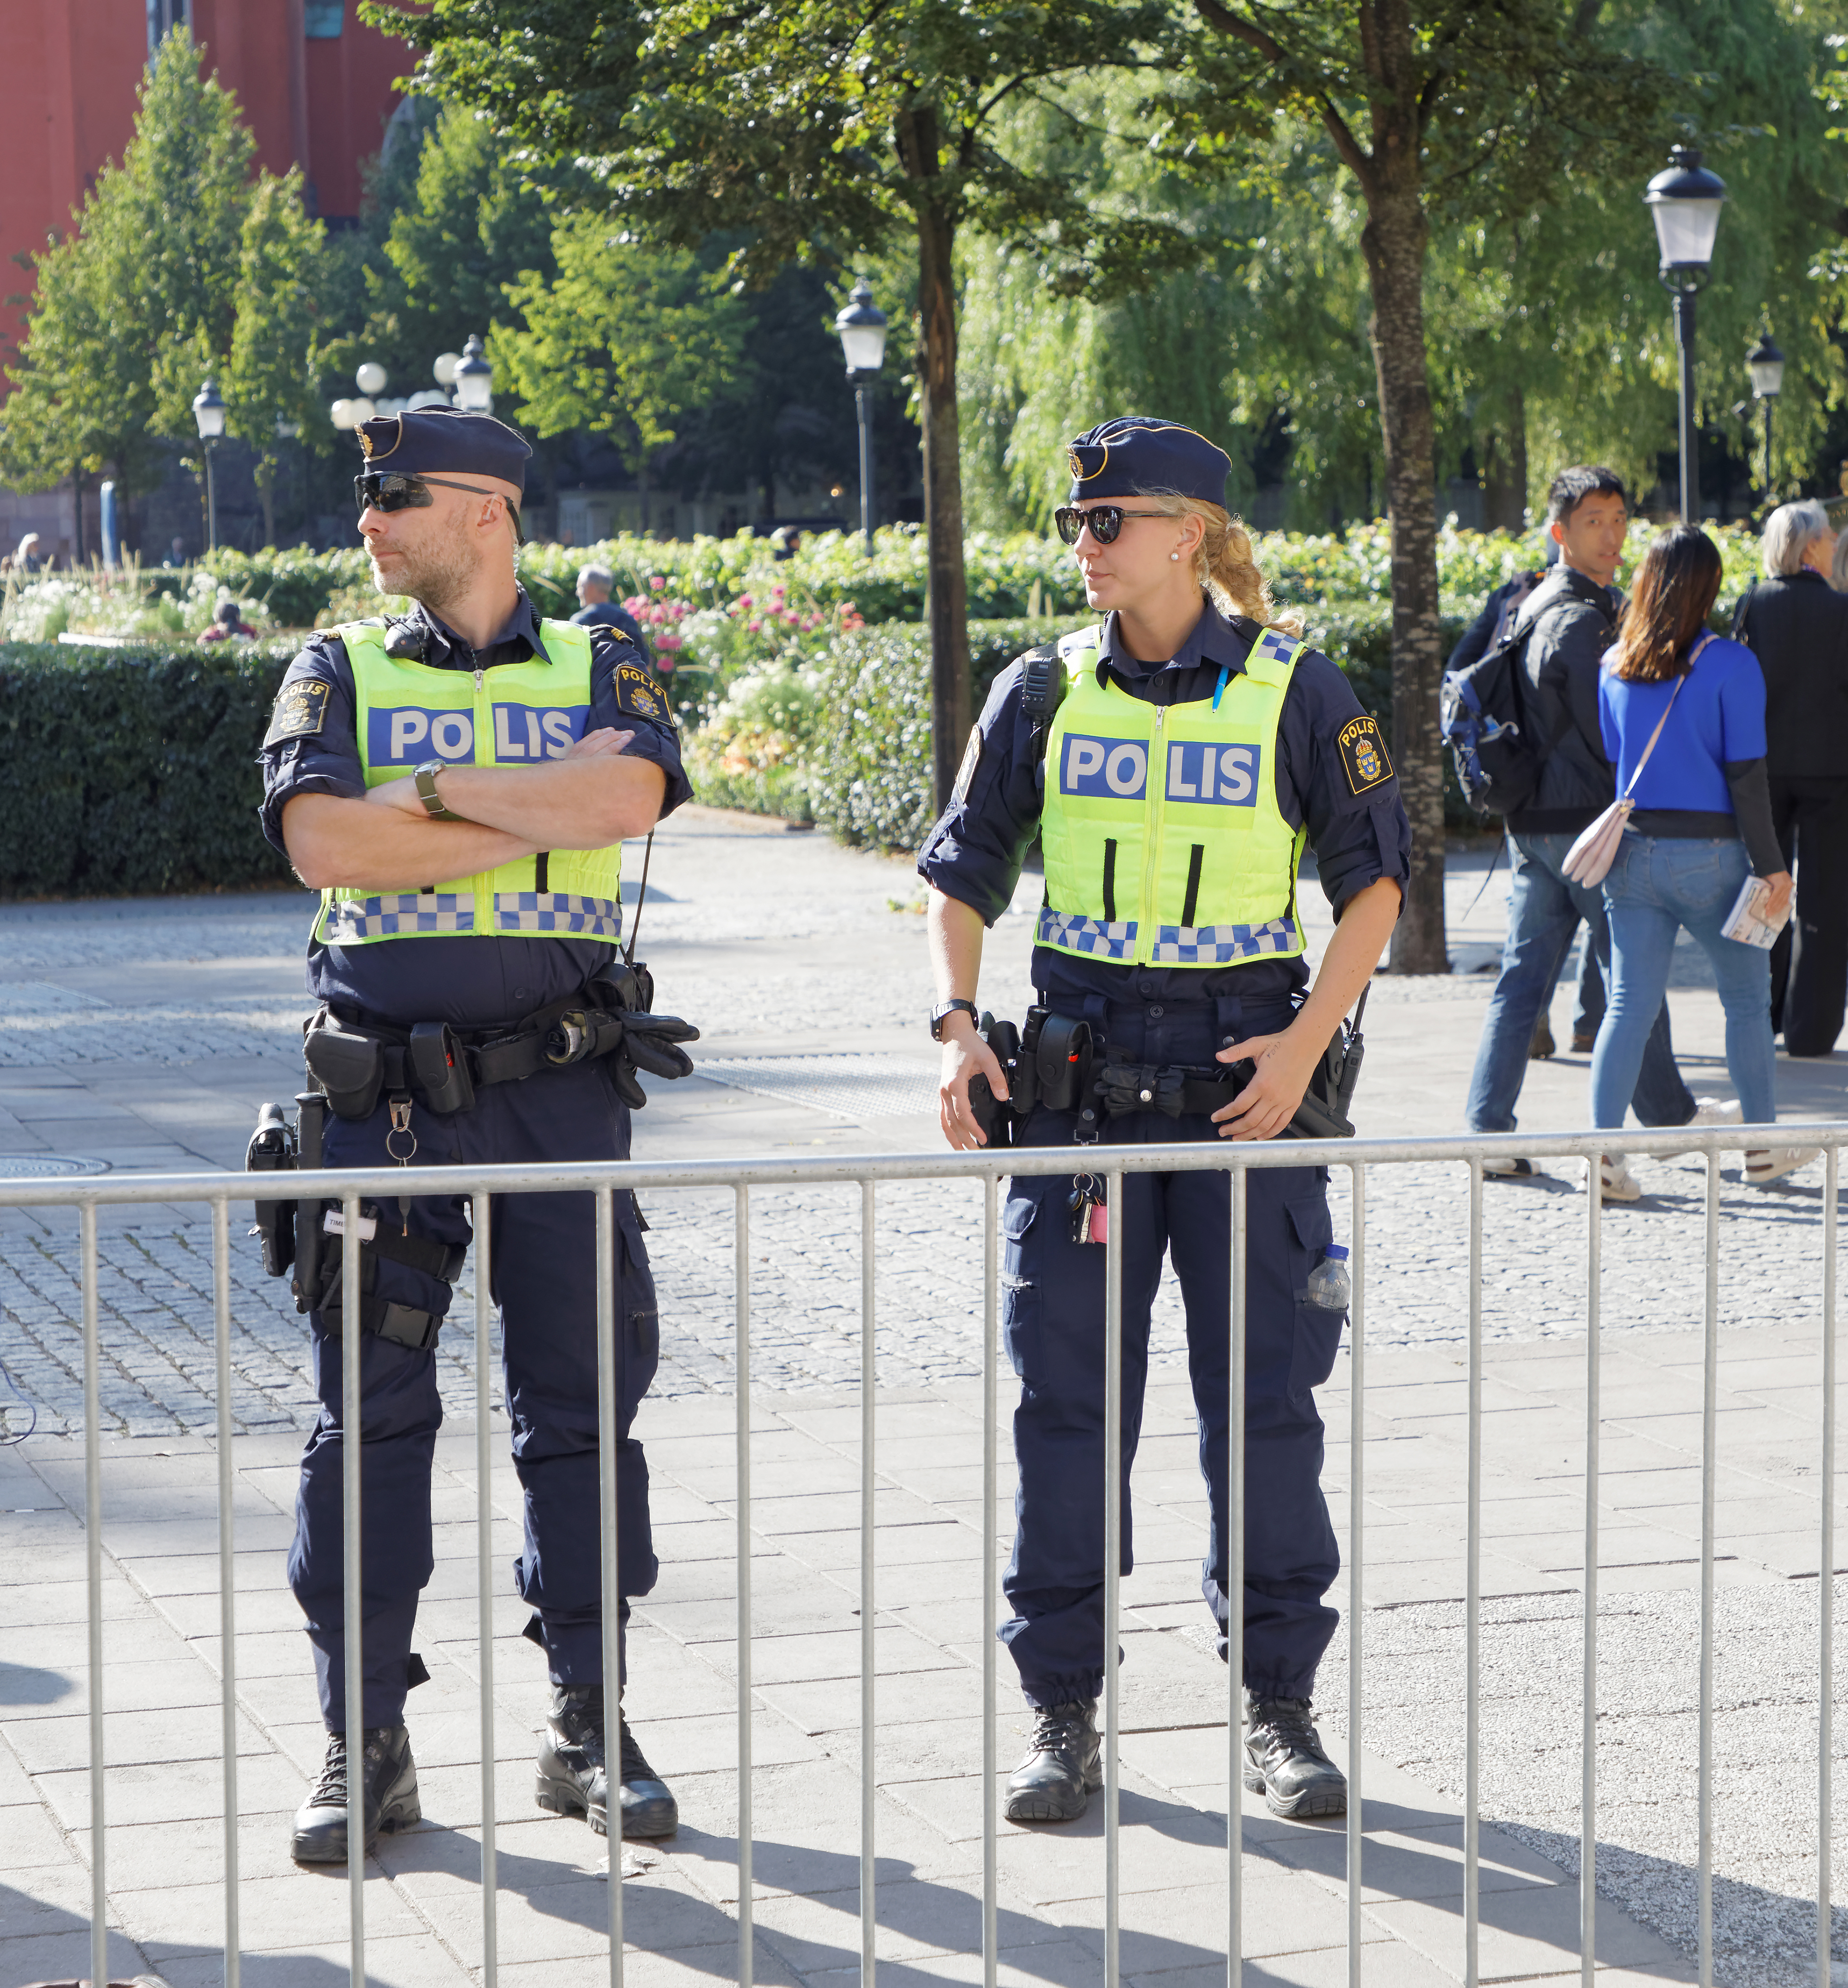 Σουηδία: Η εξάπλωση της βίας των συμμοριών καταστρέφει την ειρηνική εικόνα της χώρας